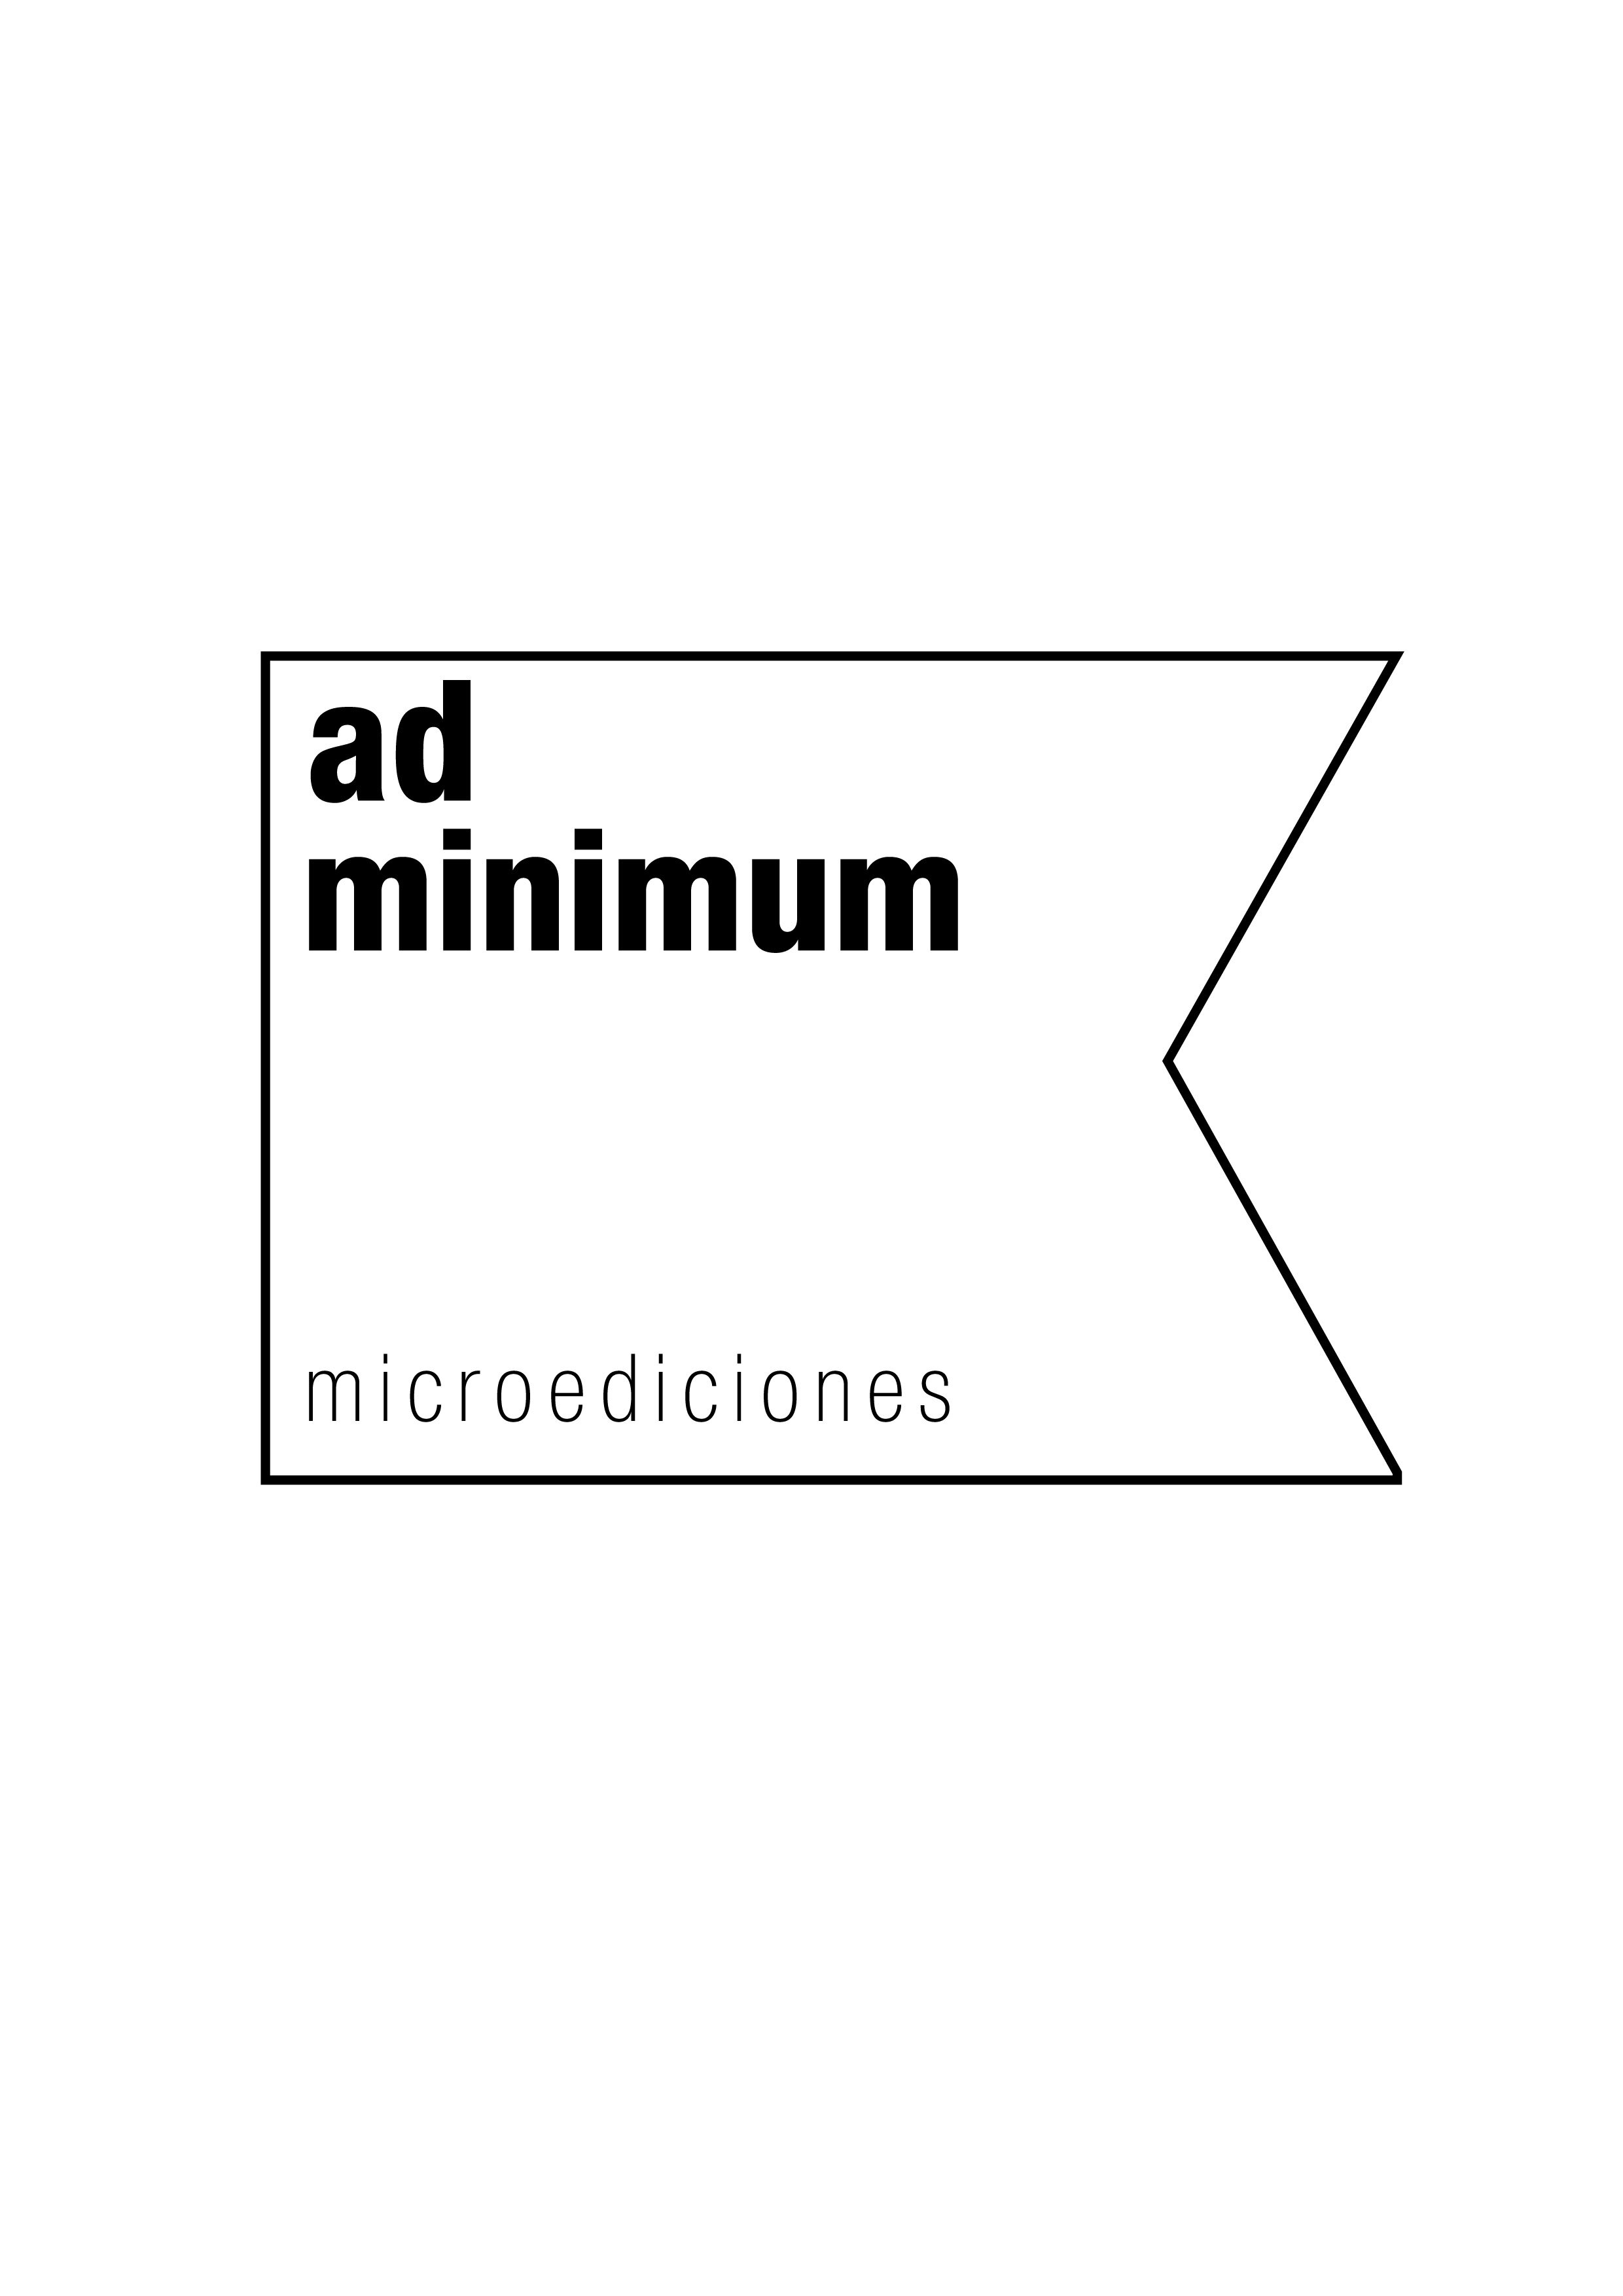 ad minimum microediciones Profile